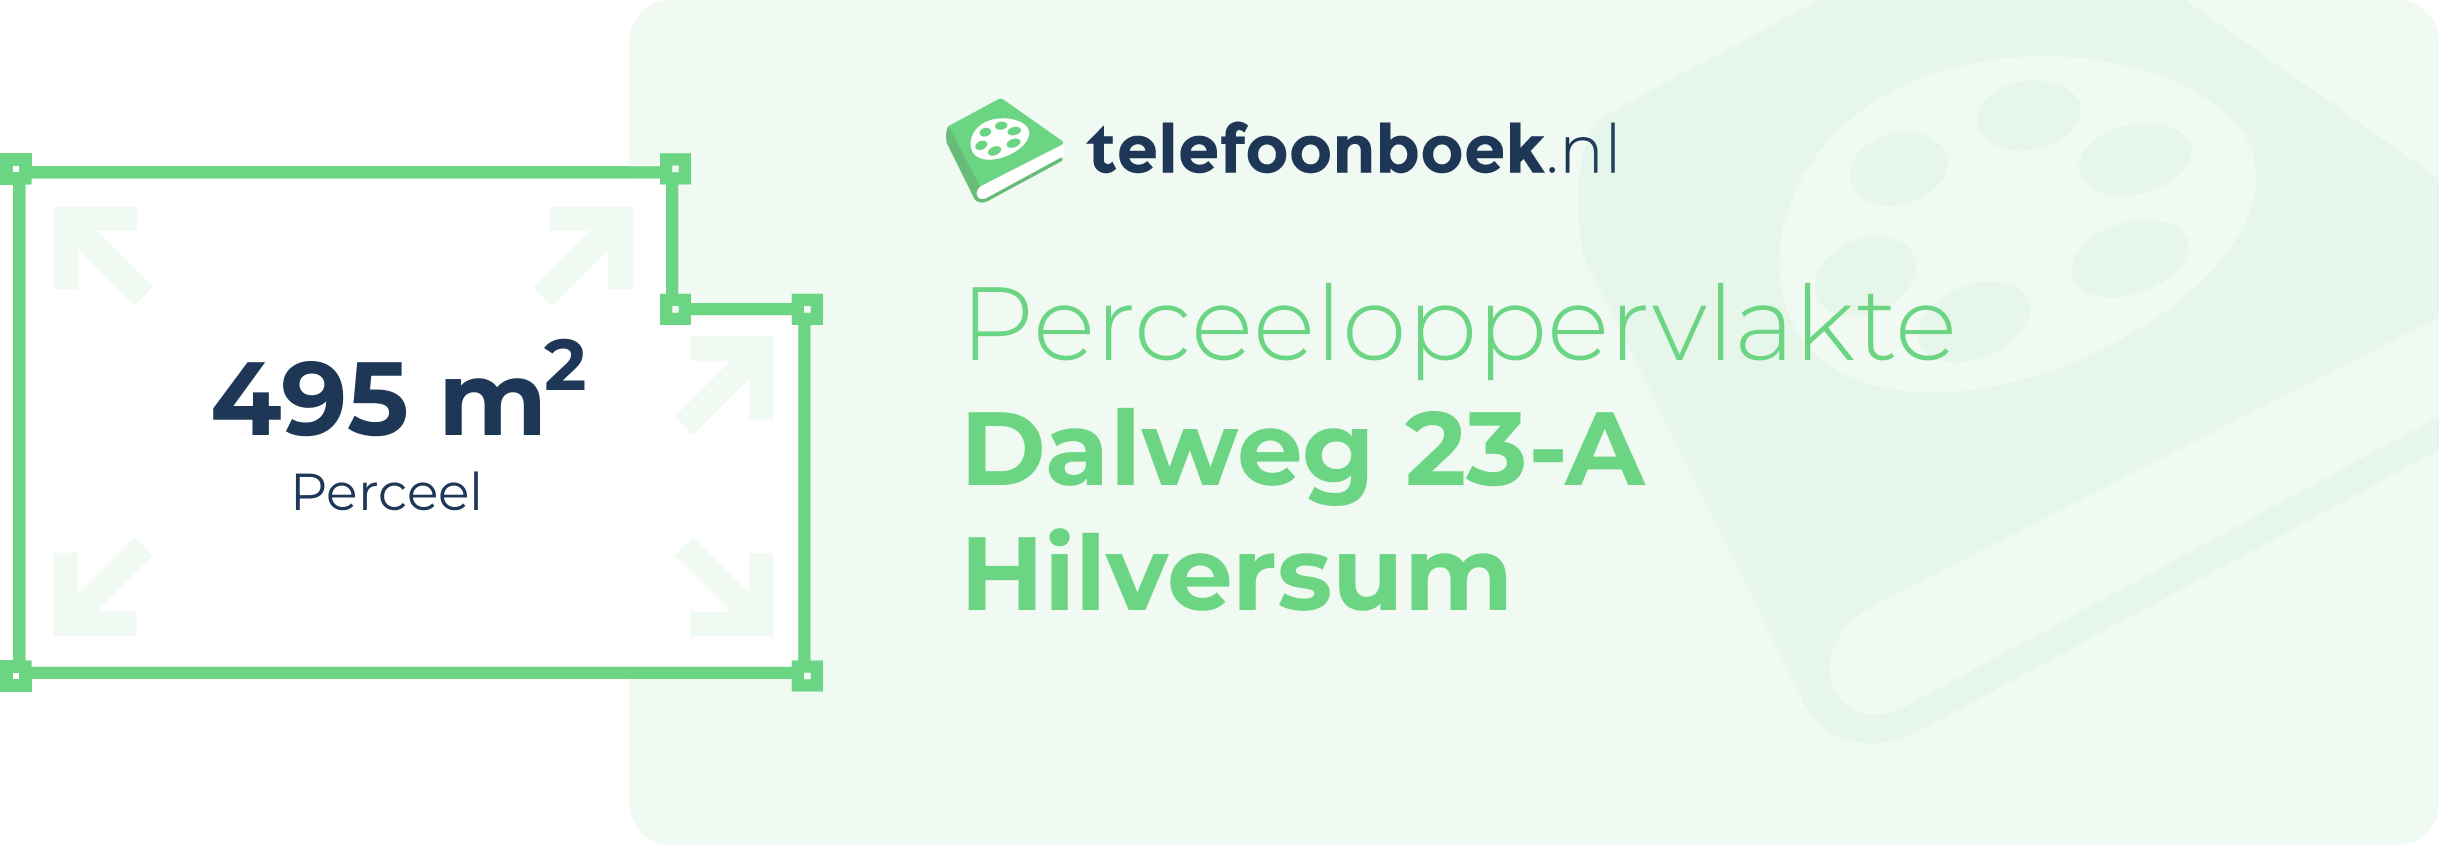 Perceeloppervlakte Dalweg 23-A Hilversum